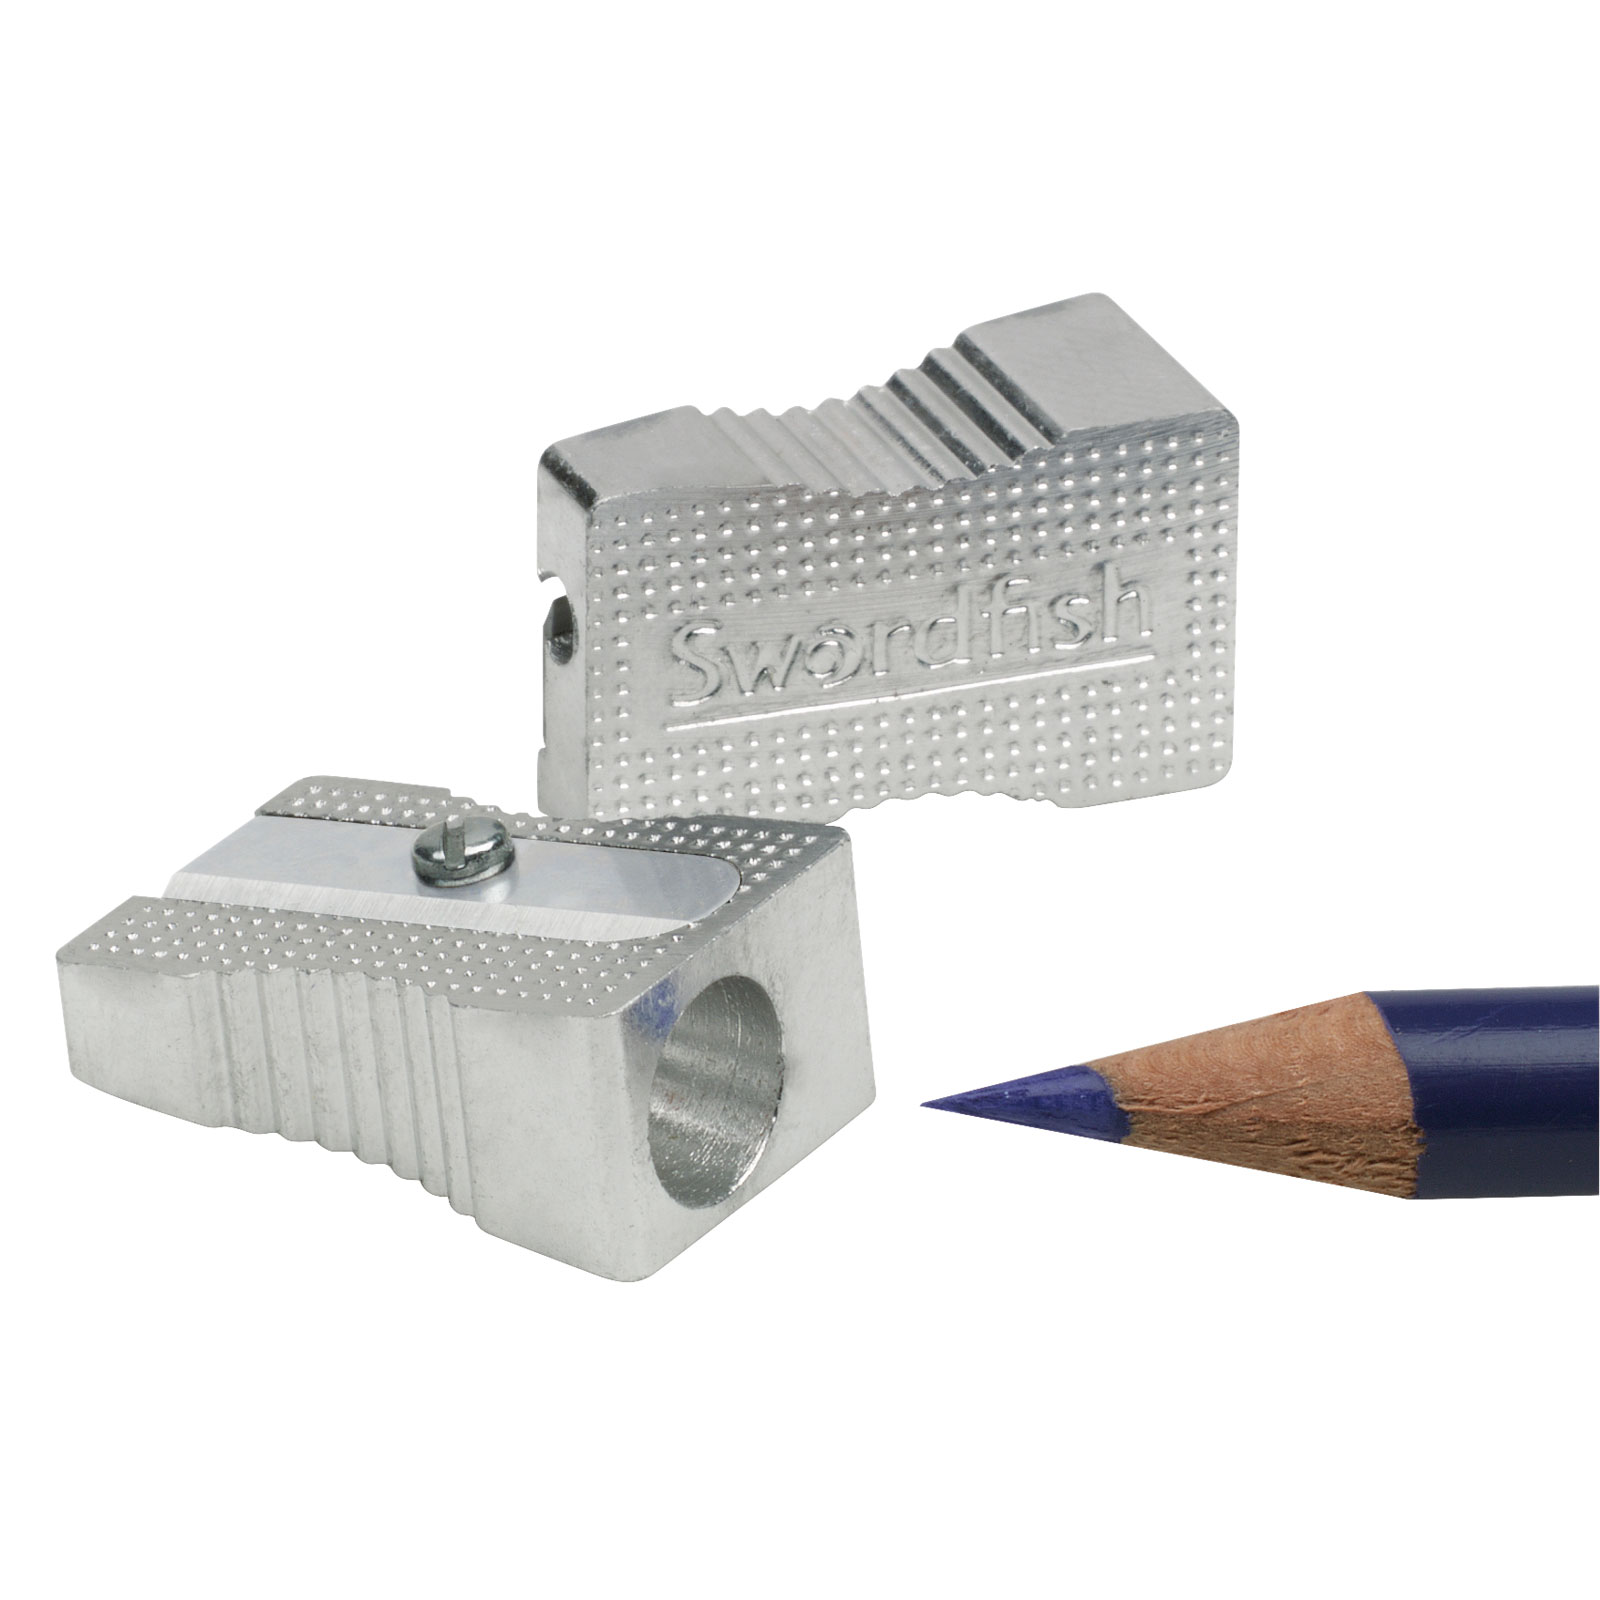 Dahle - Metal Wedge Handheld Pencil Sharpener - Pack of 25 (53459)